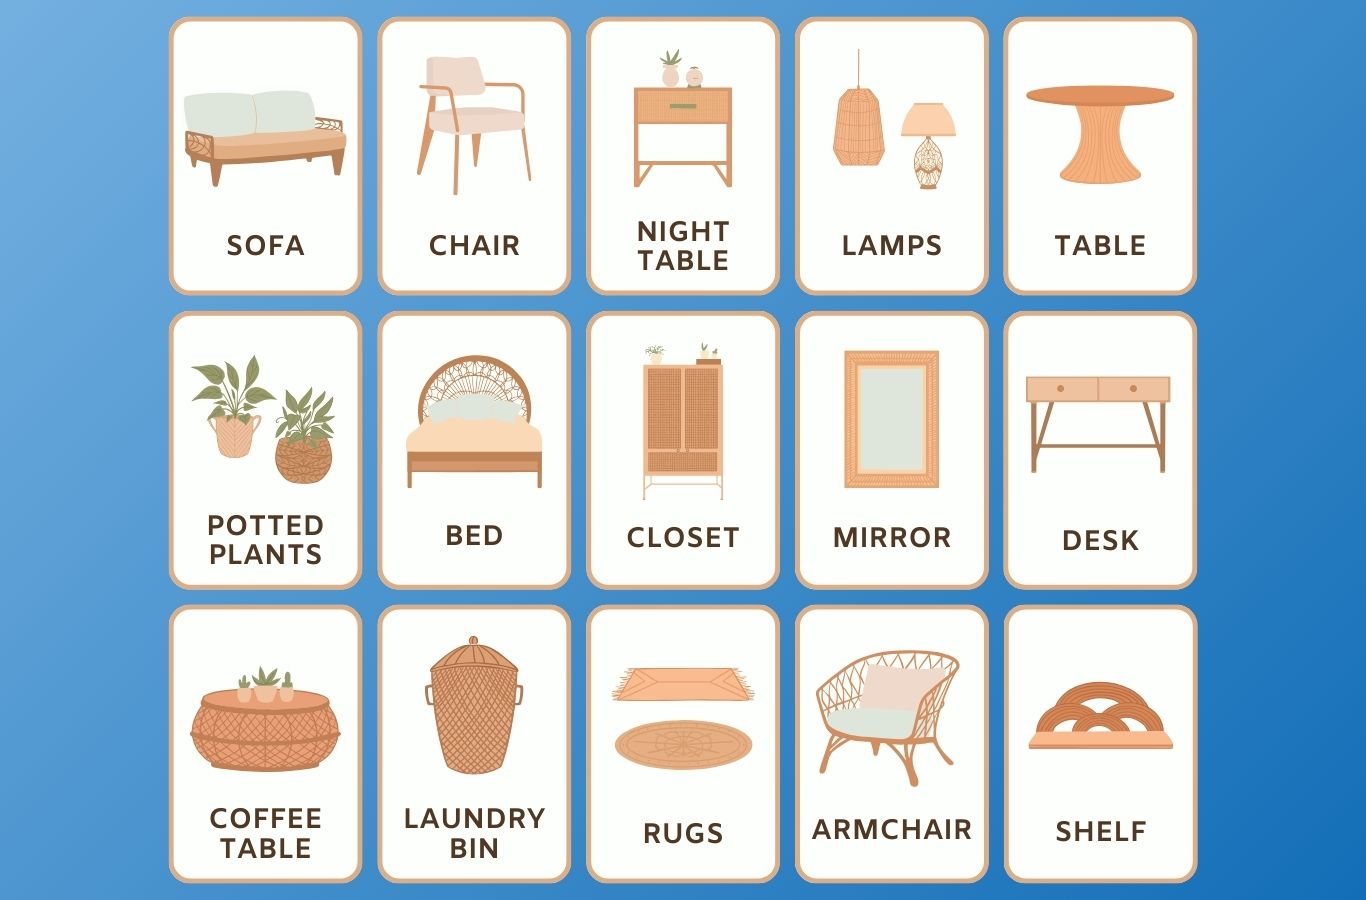 Từ vựng tiếng Anh theo hình ảnh về các vật dụng trong nhà